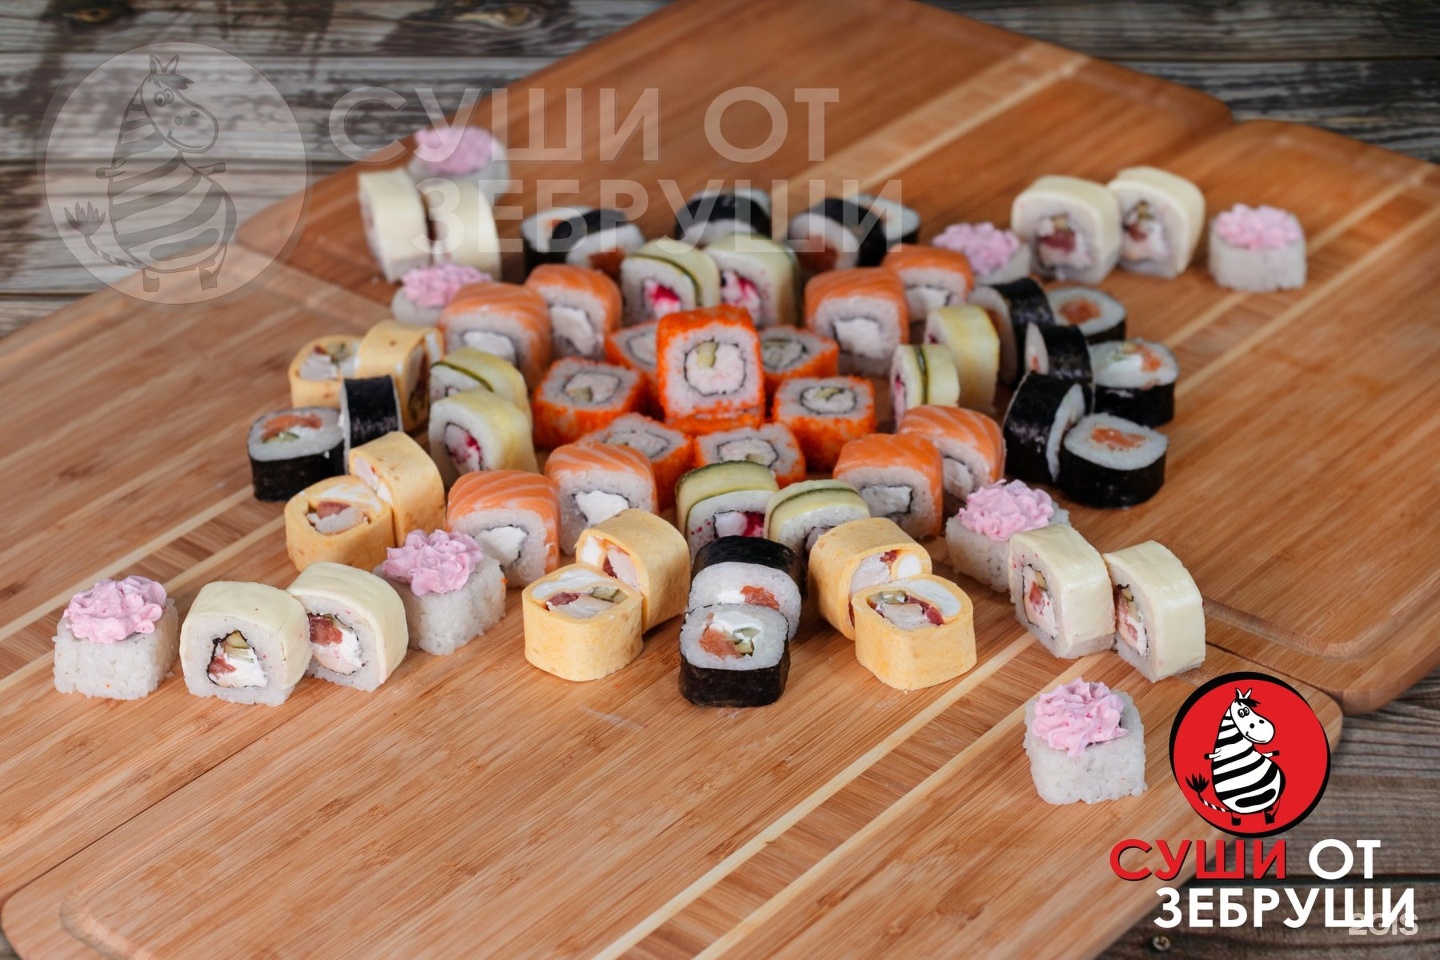 Суши от зебруши искитим отзывы (120) фото